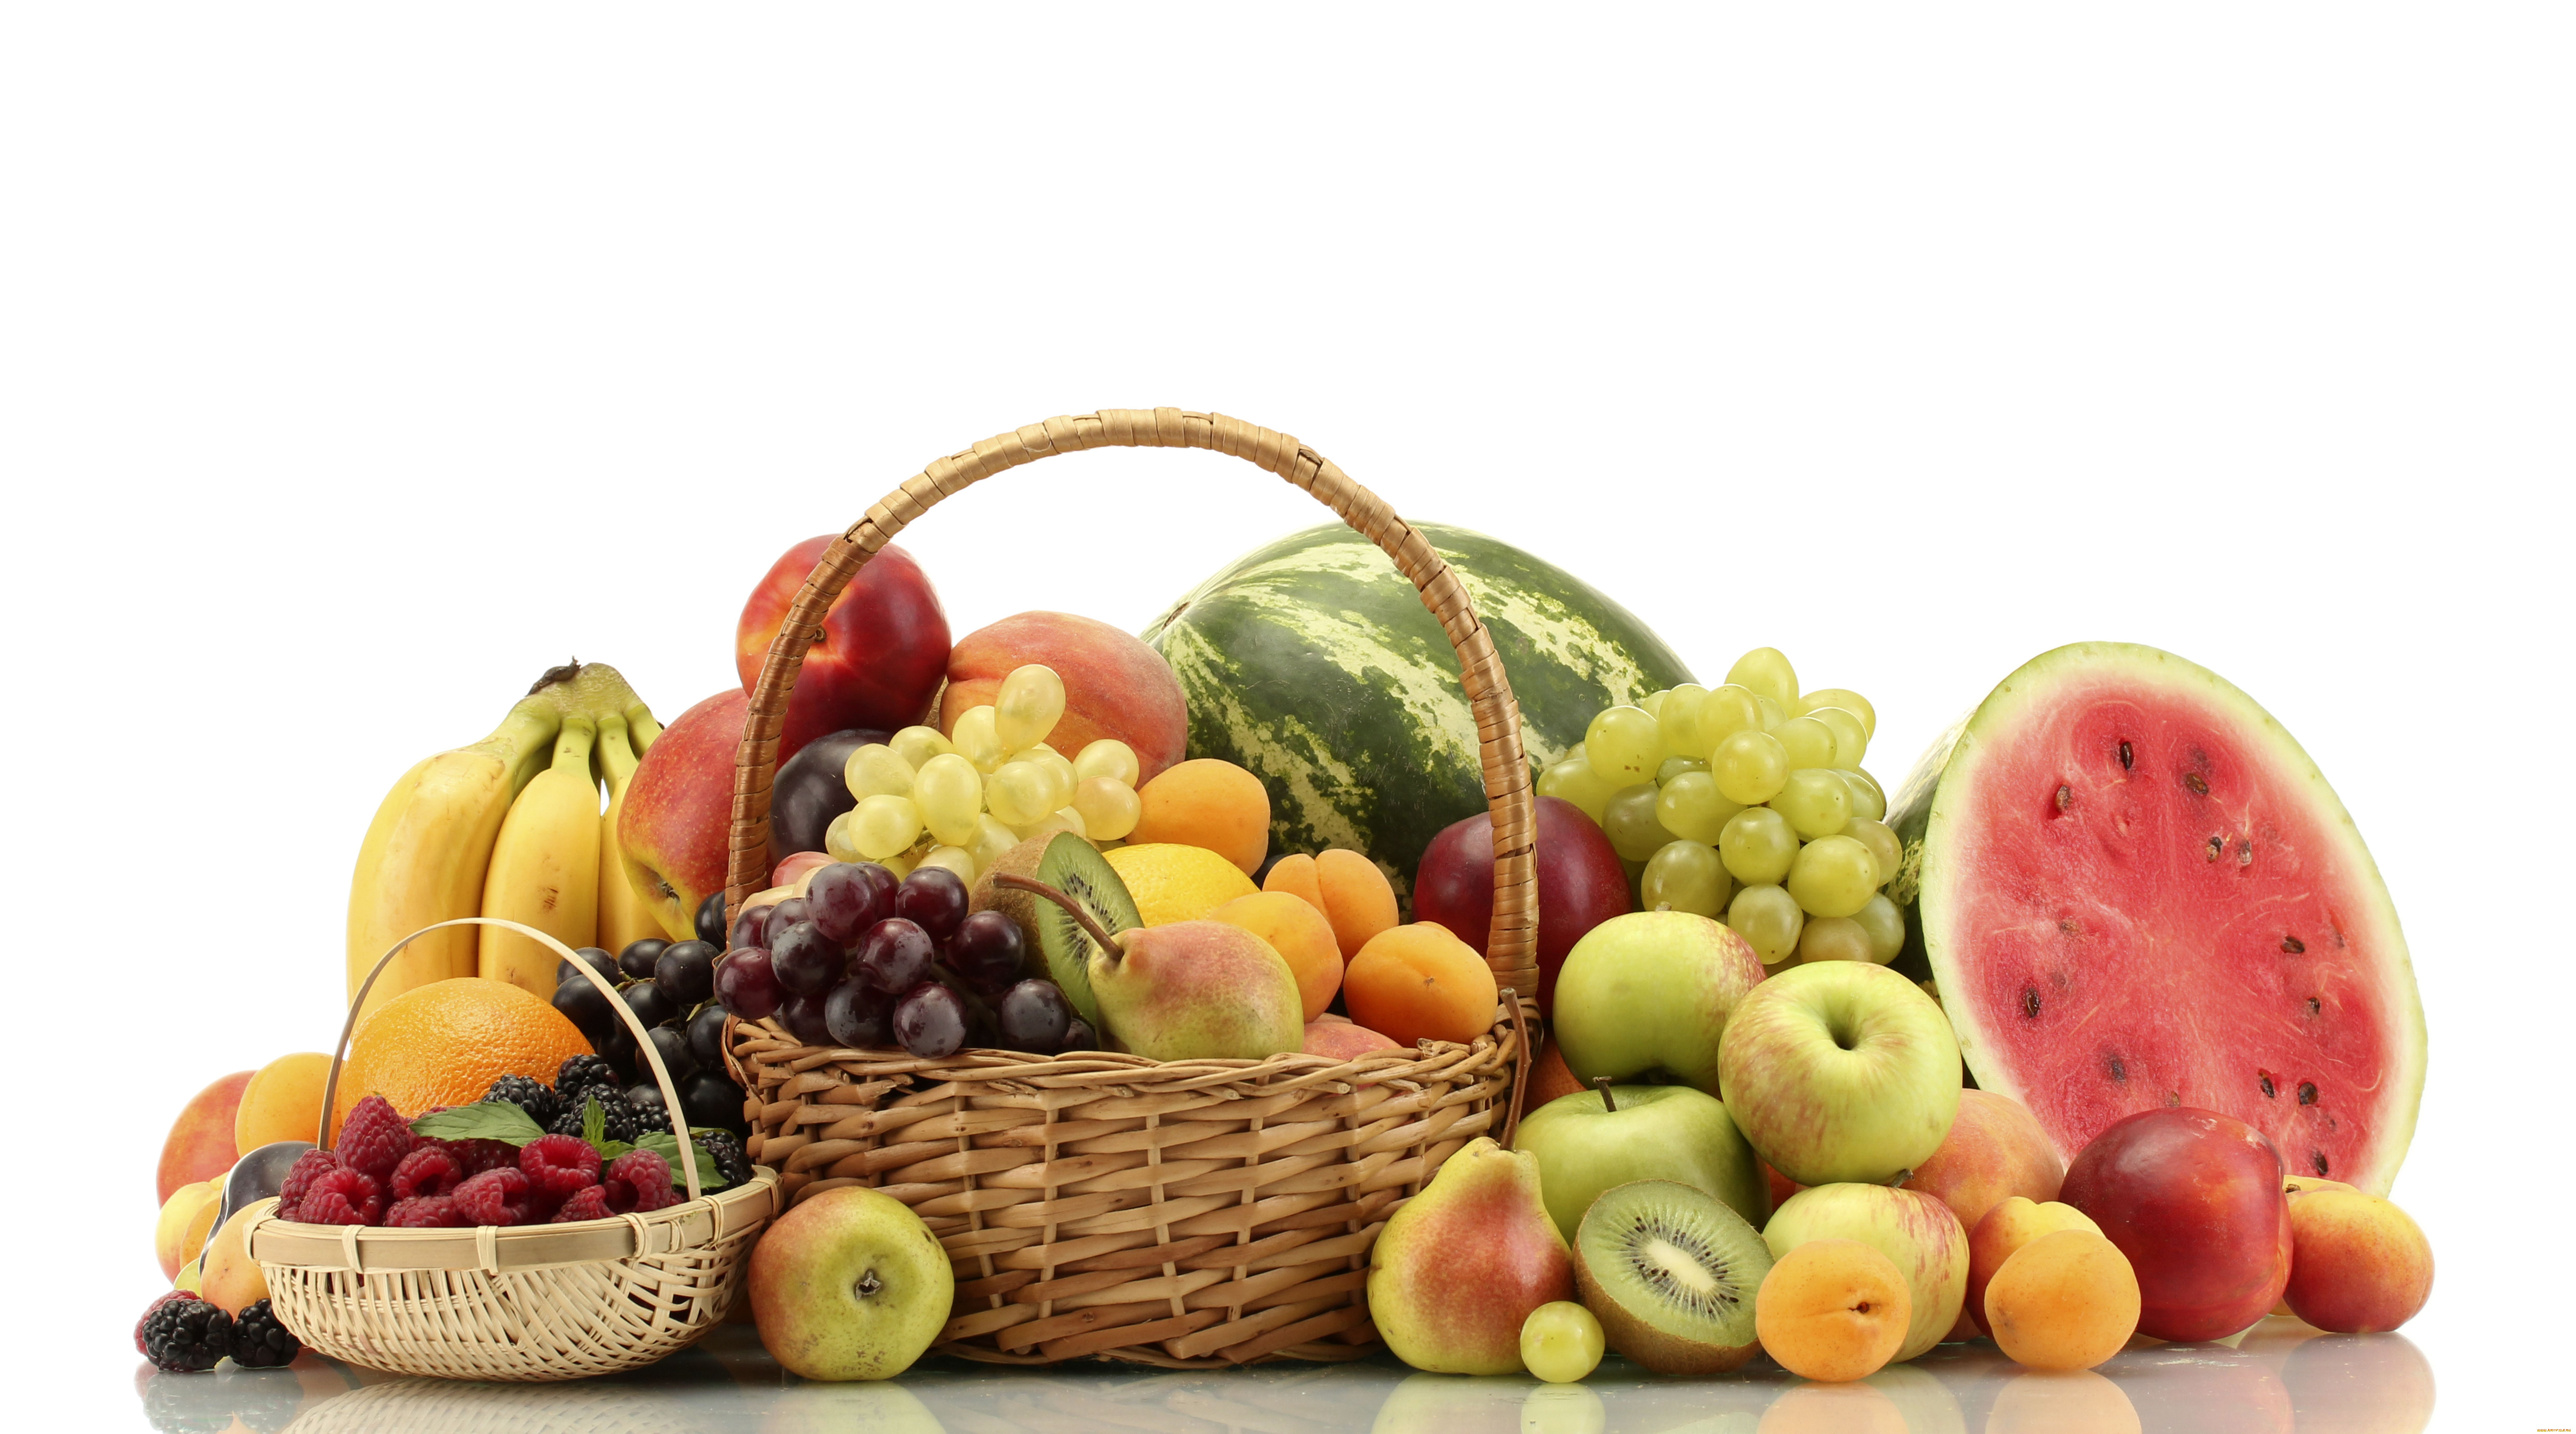 fruit, еда, фрукты, ягоды, арбуз, груши, яблоки, киви, бананы, персики, виноград